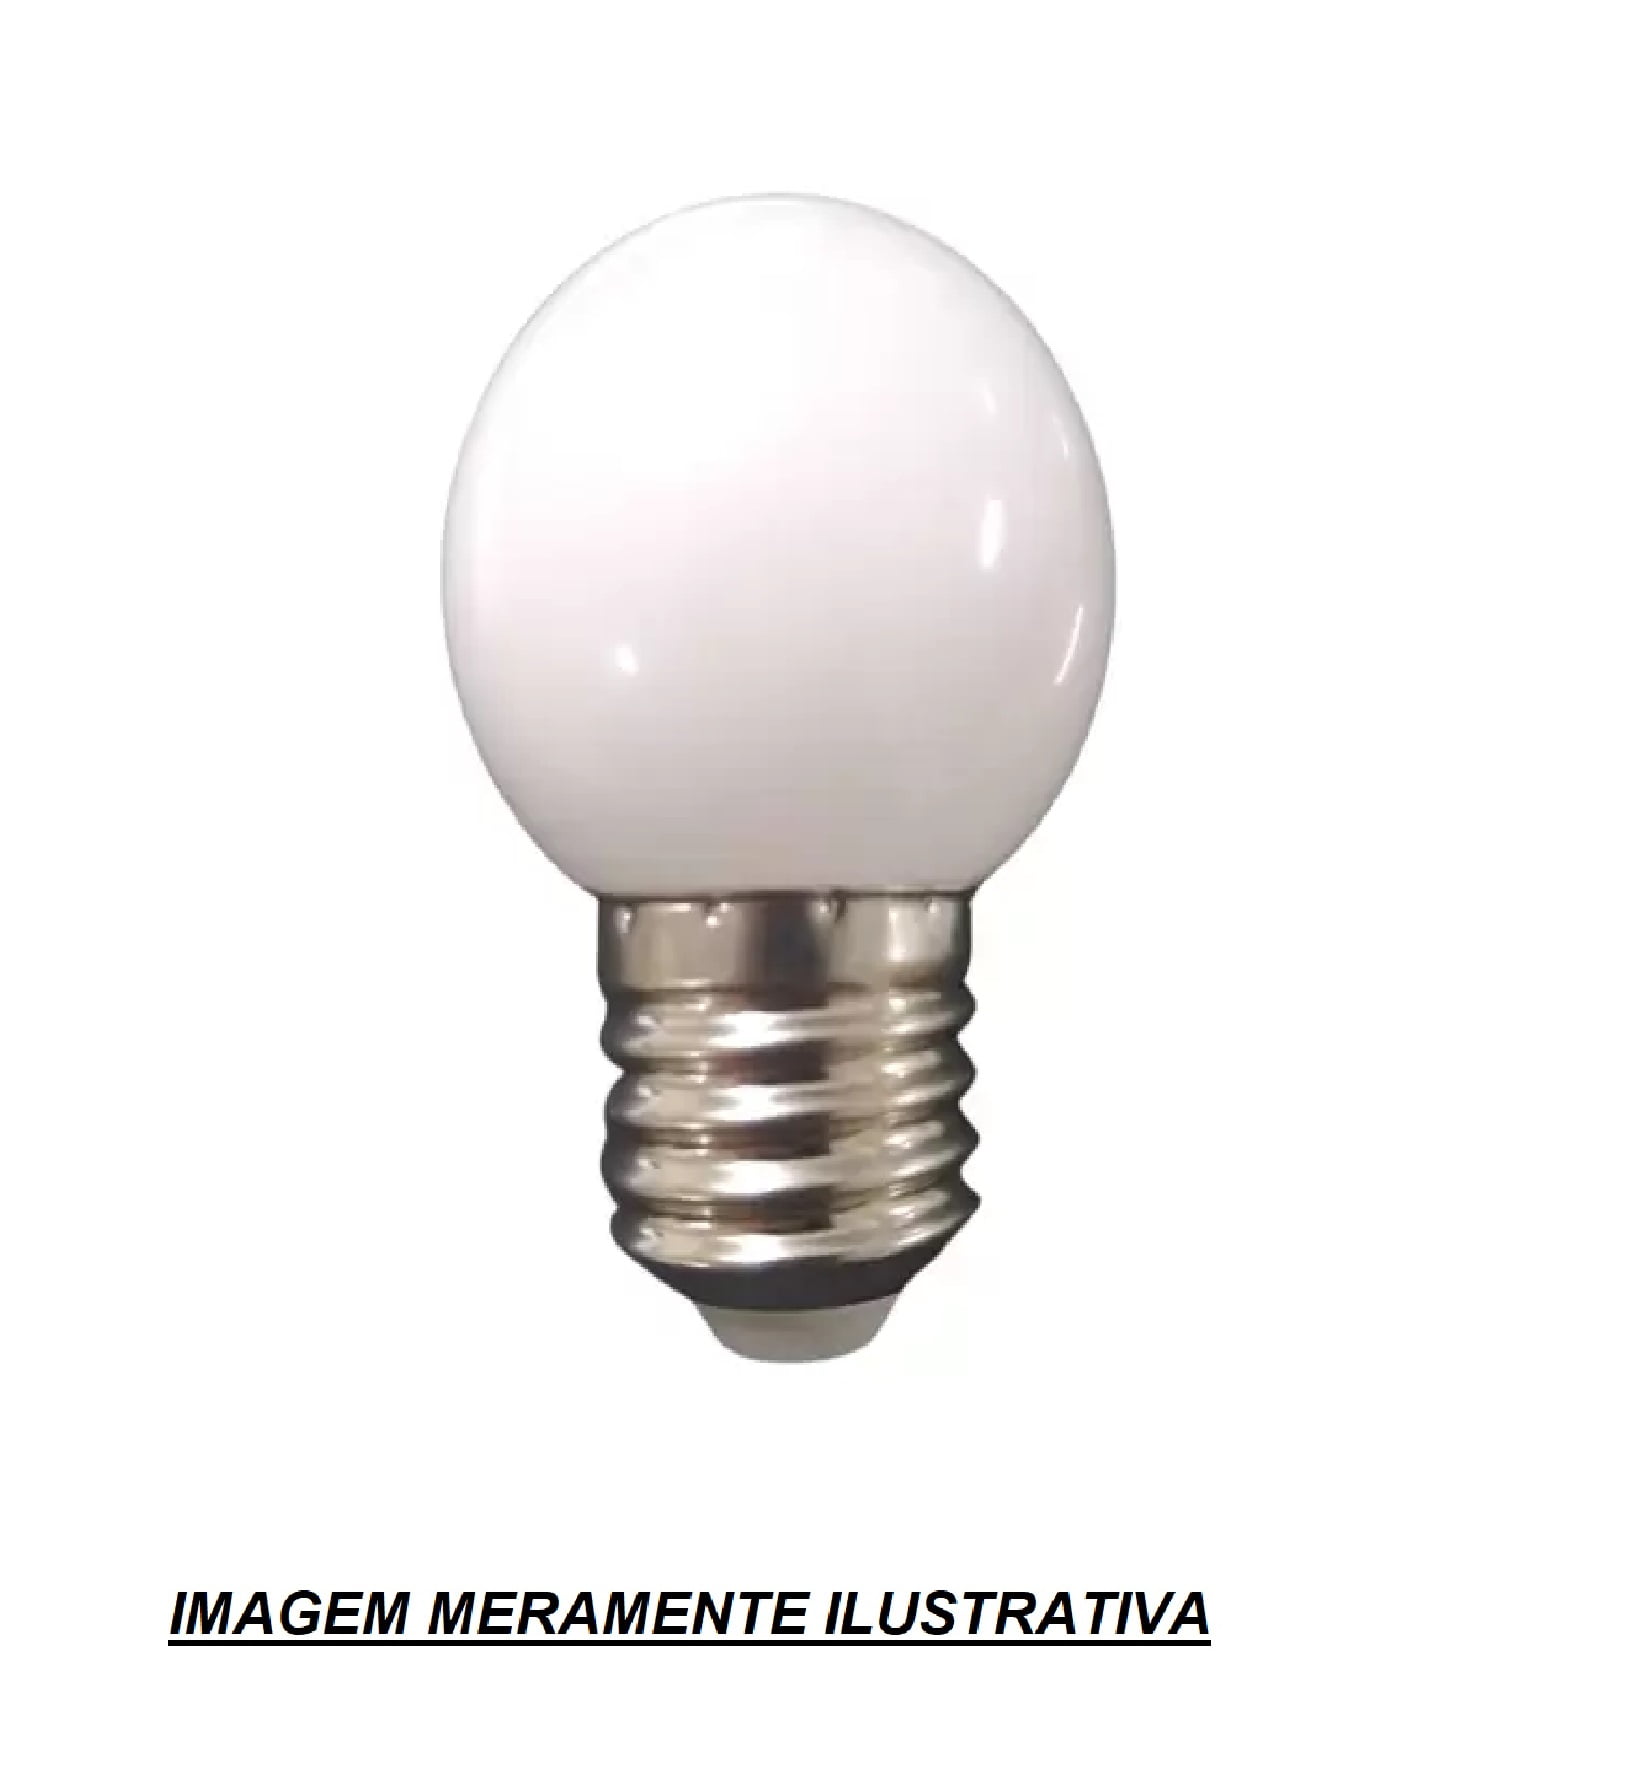 10 UNIDADES de lâmpadas Bulbo Led ( Bolinha ) 3w E27 - 3000k Branco Quente